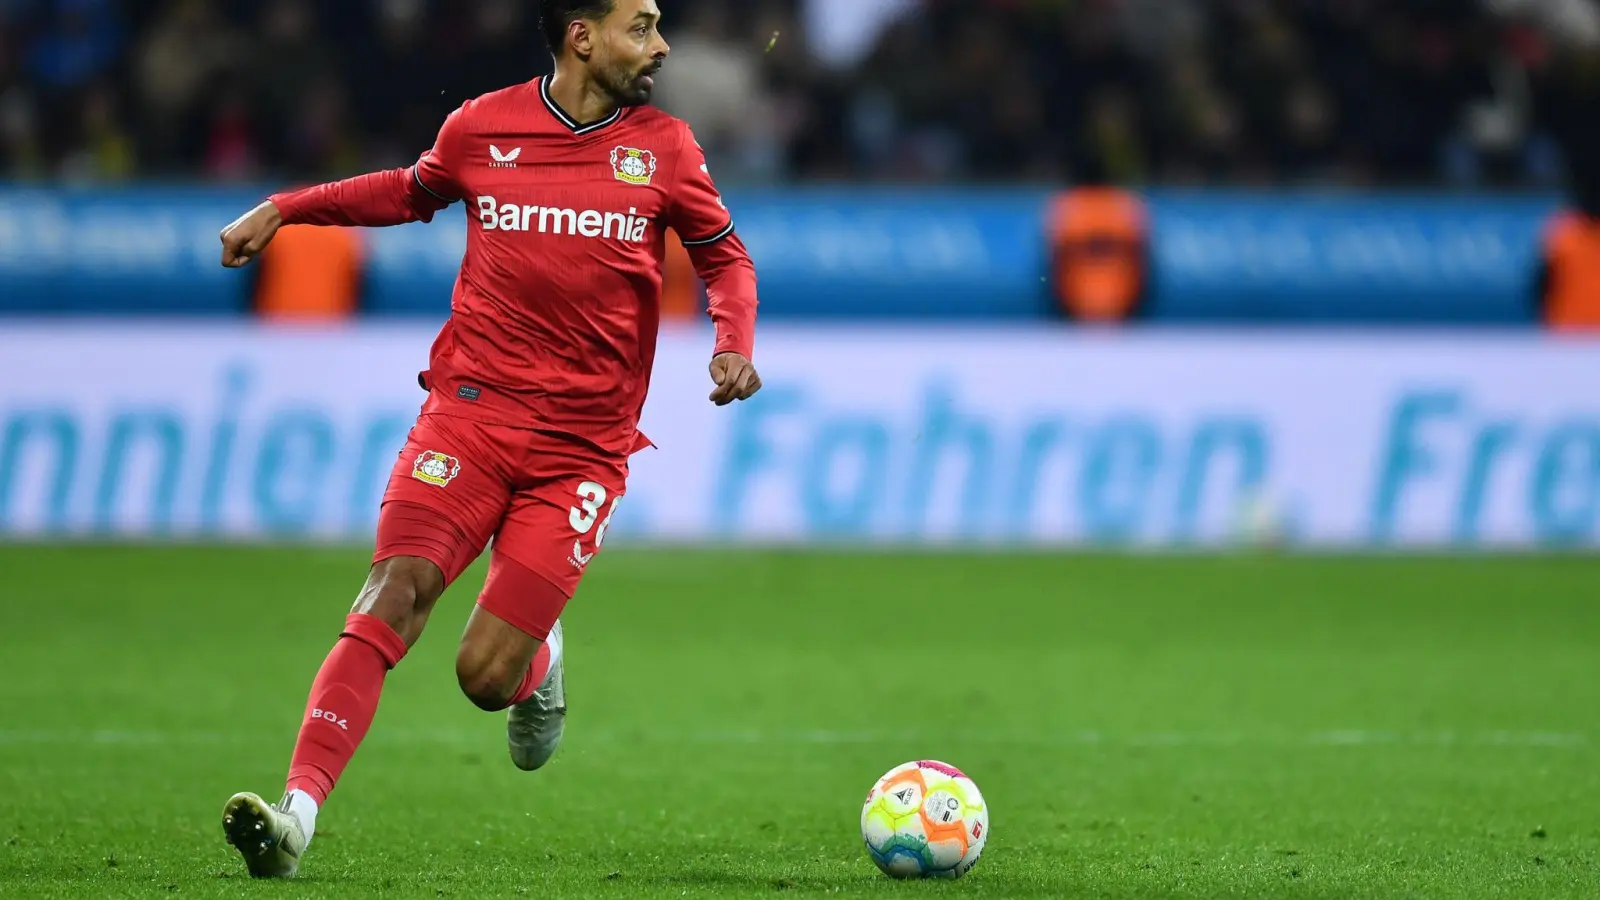 Leverkusens Karim Bellarabi muss die Saison vorzeitig beenden. (Foto: Marius Becker/dpa)